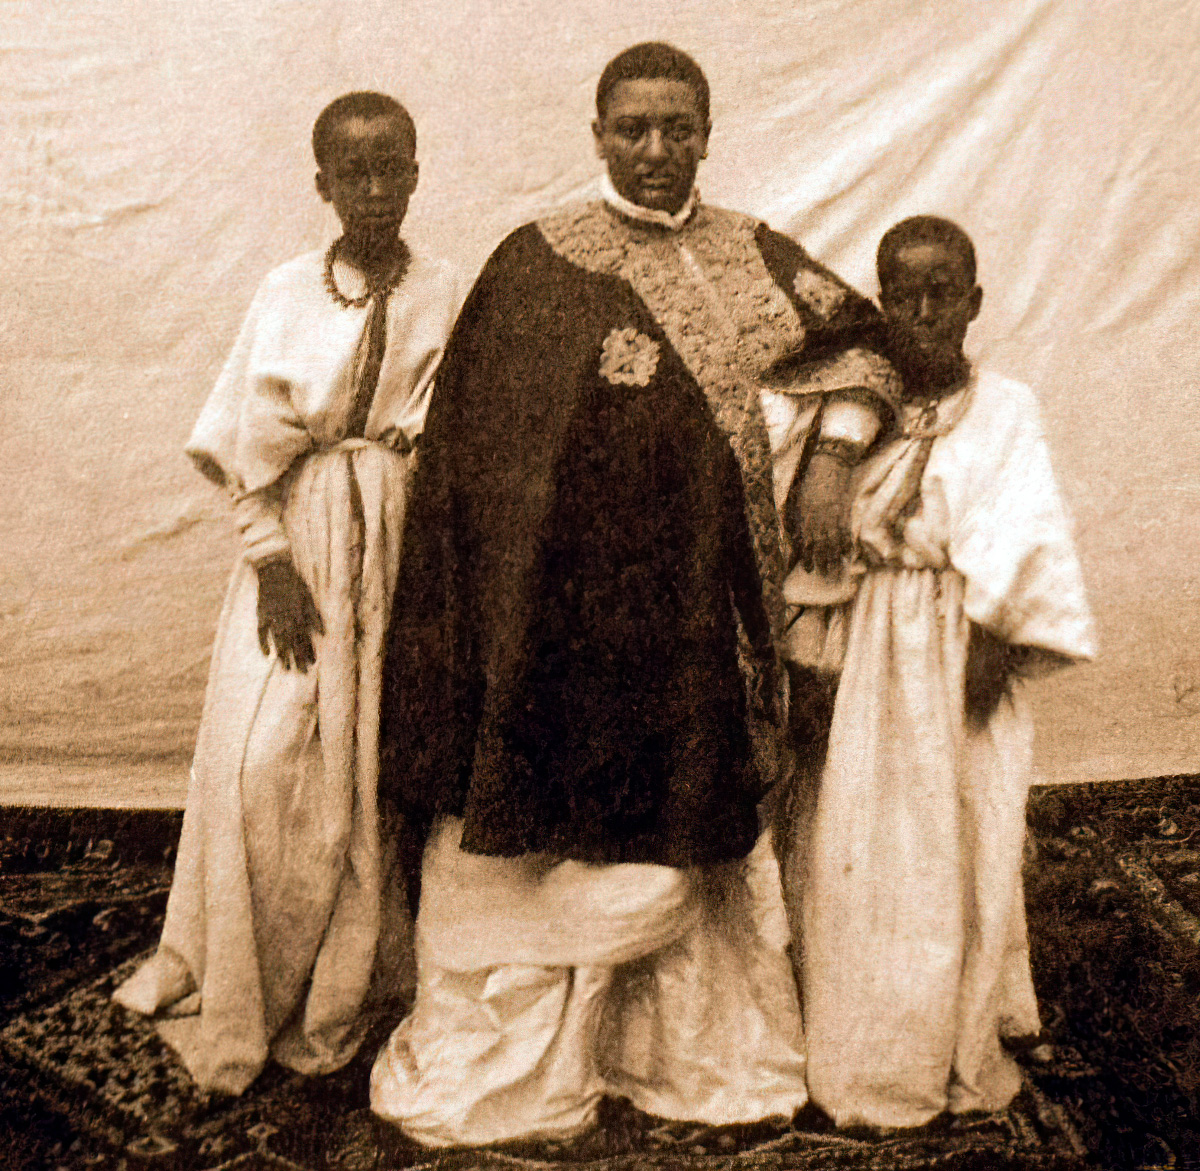 Супруга дедъязмача Тафари, принцесса Менен со служанками